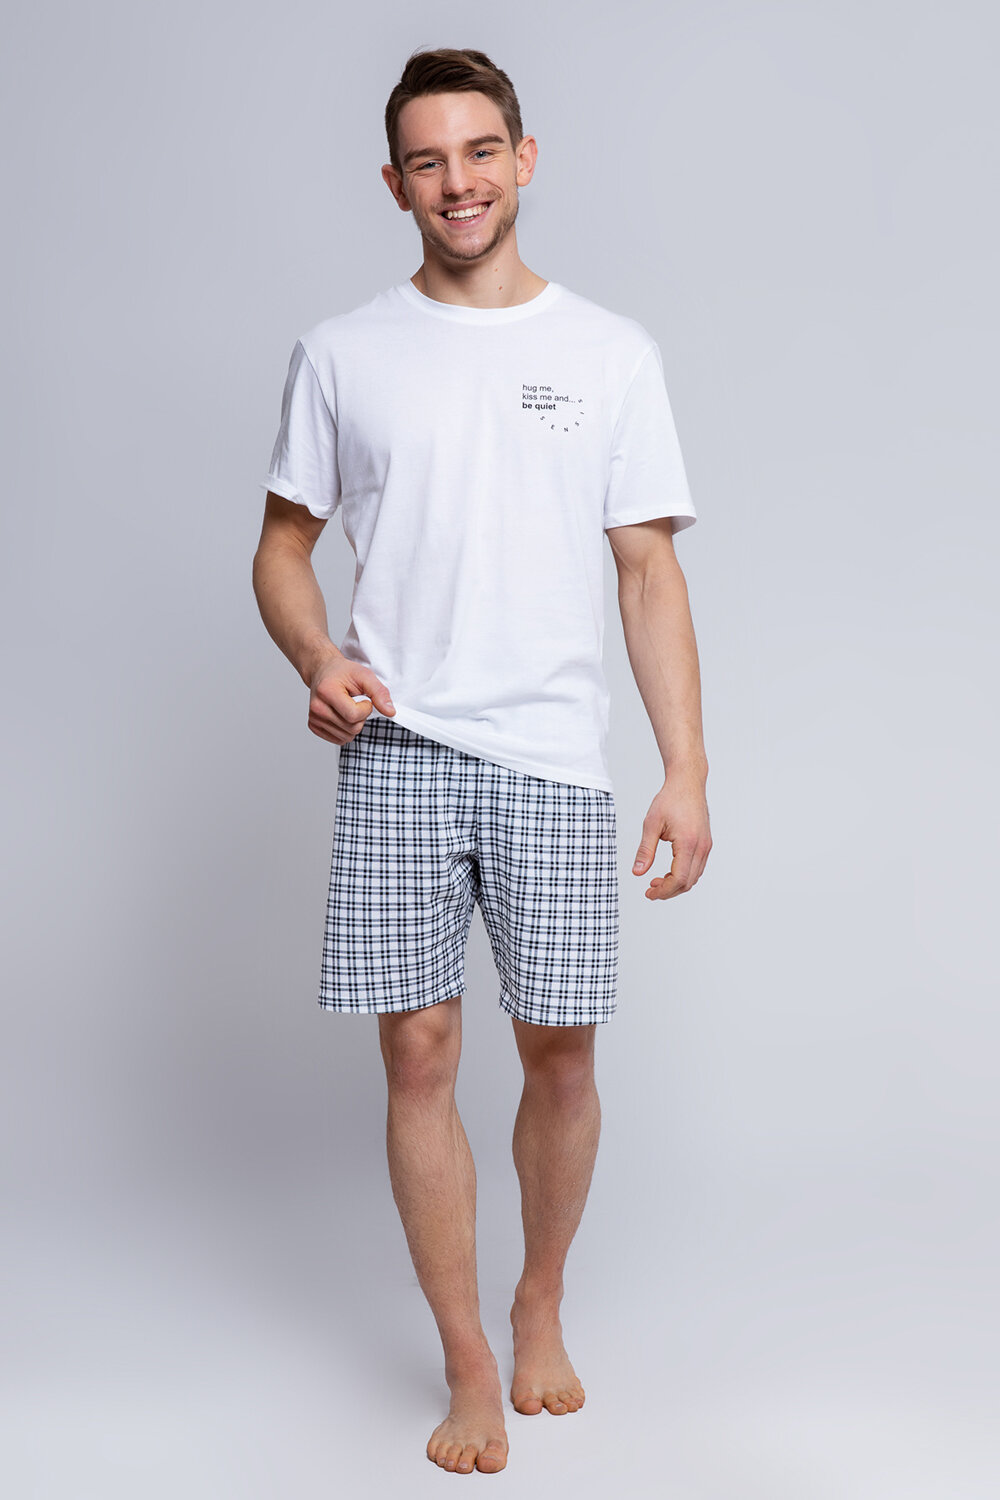 Пижама мужская Sensis Chris, футболка и шорты, белый, хлопок 100% (Размер: L)